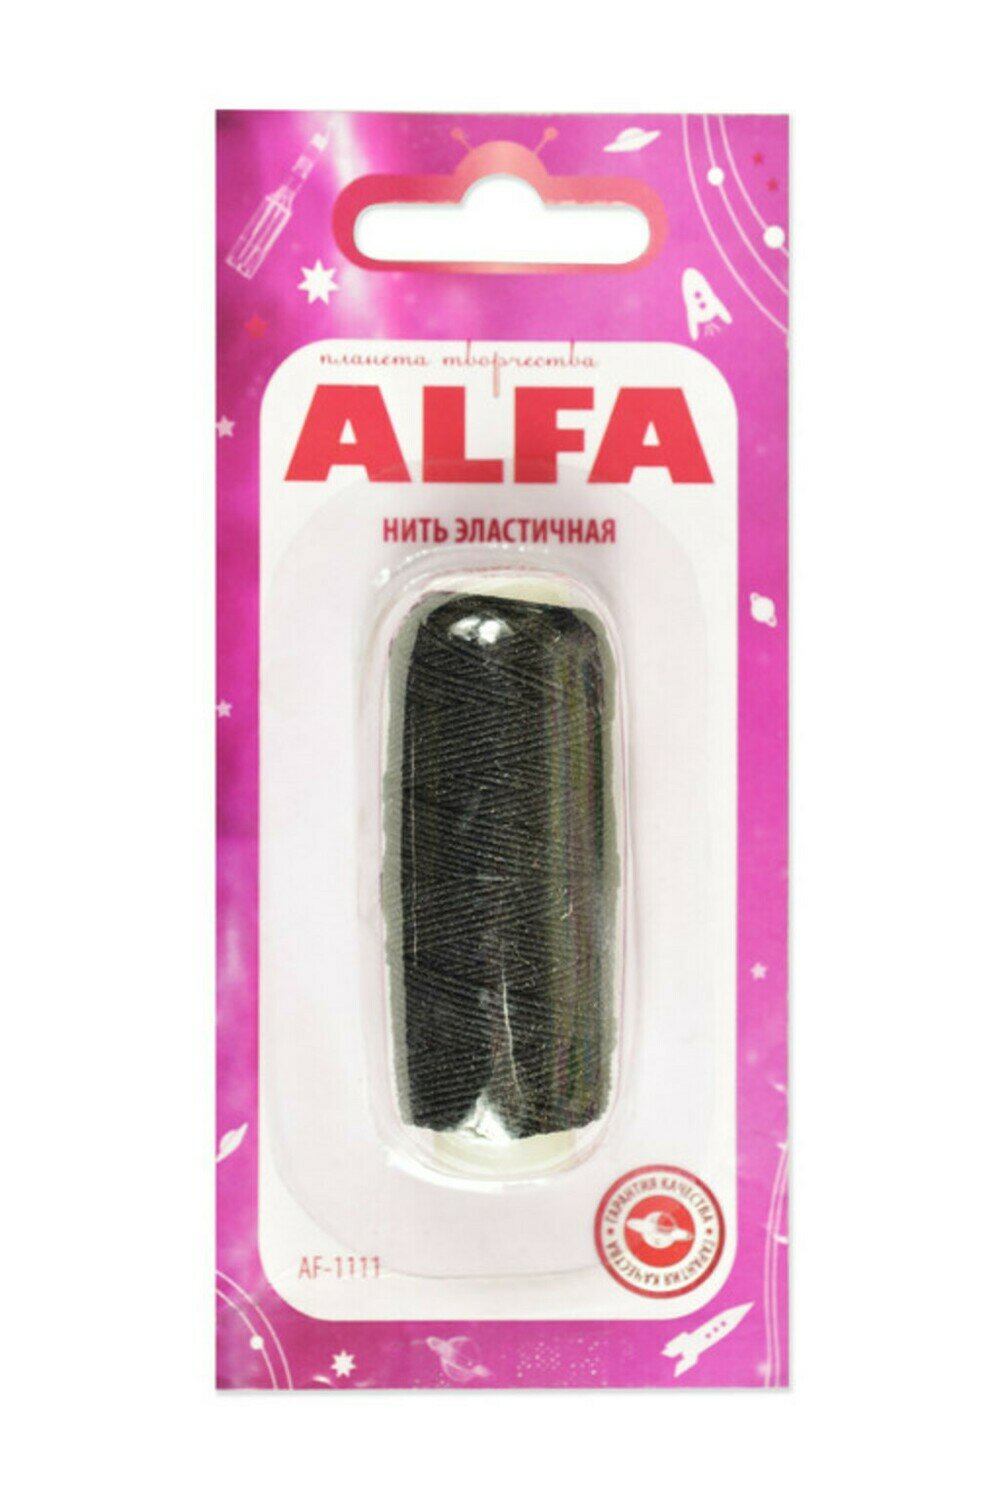 Нить эластичная (резинка) цв. черный, 25 м (в блистере) ALFA AF-1111 Black